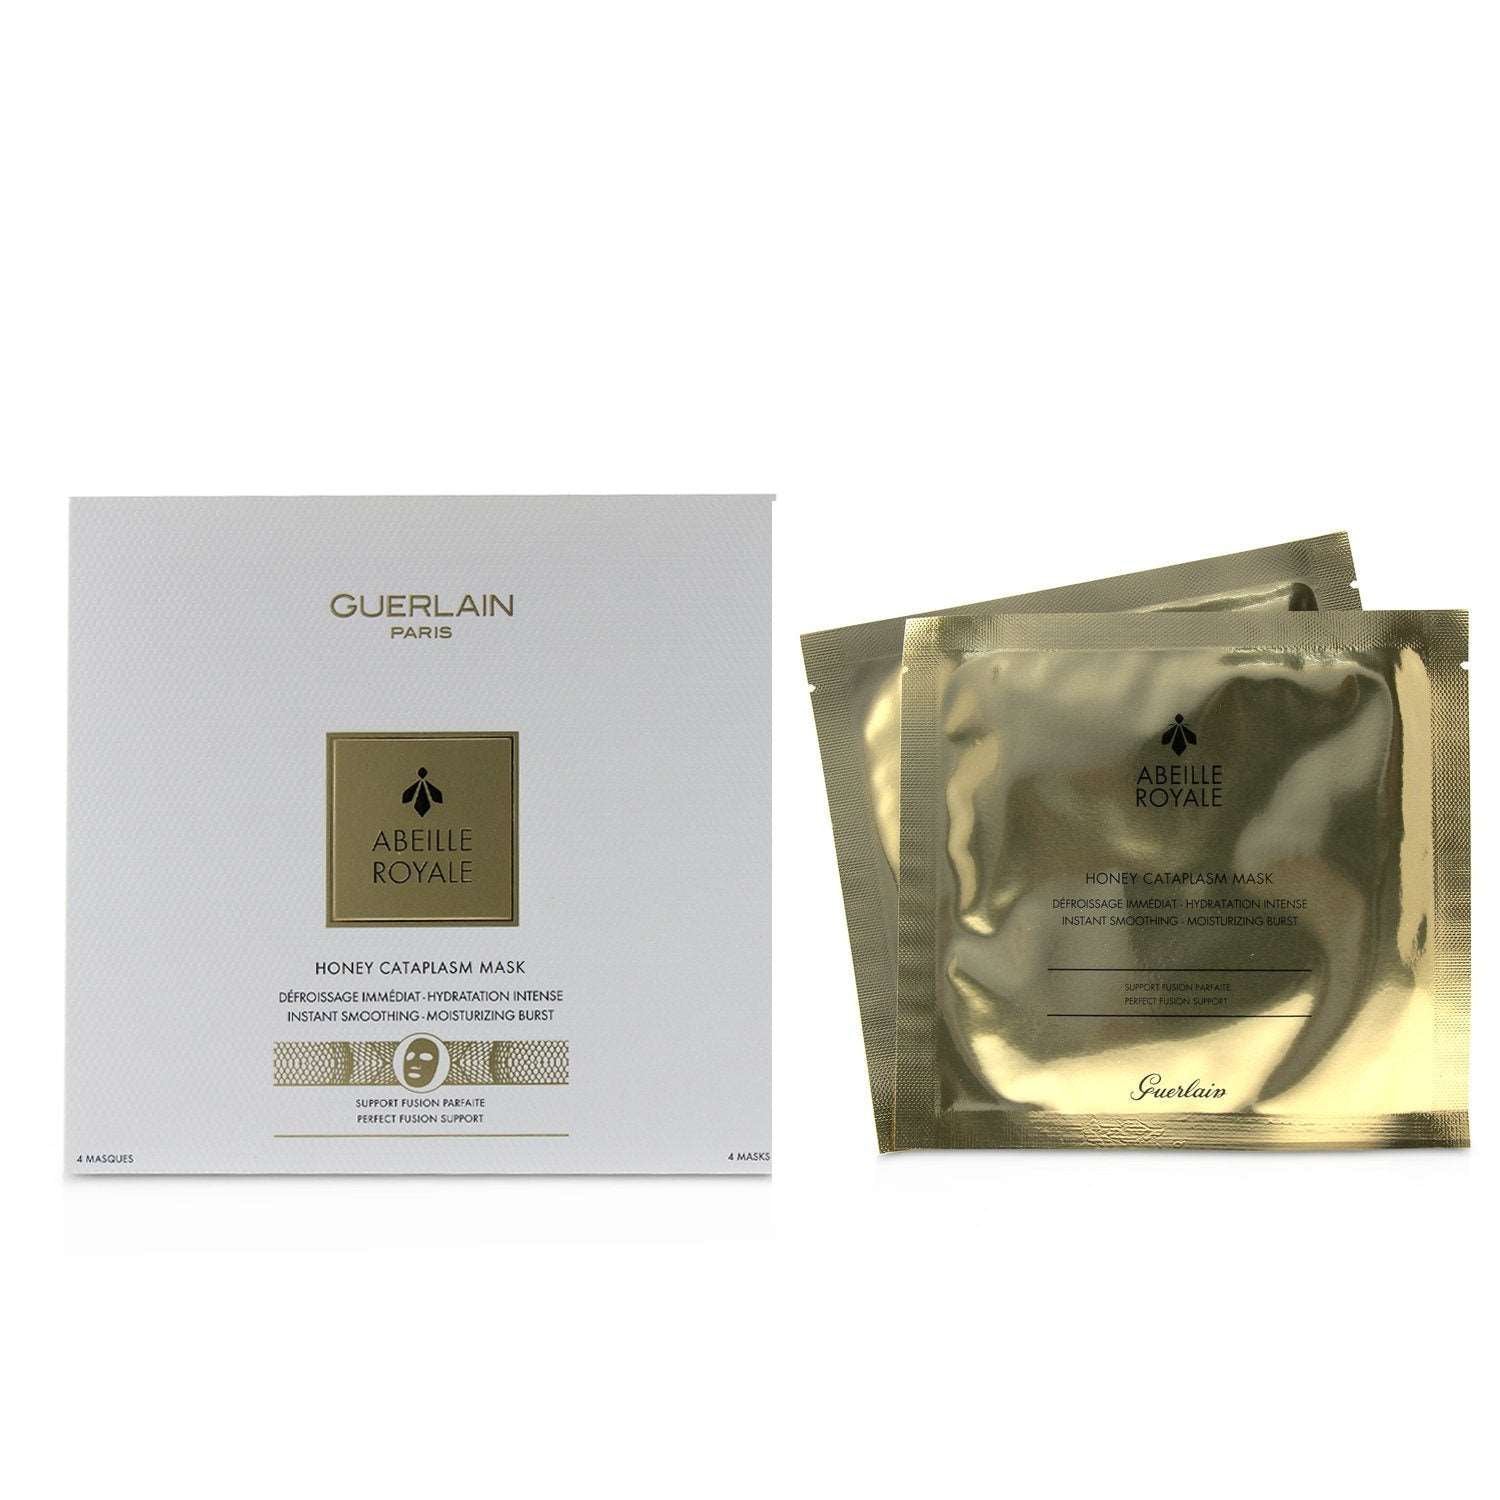 GUERLAIN - Abeille Royale Honey Cataplasm Mask G061058/610583 4 sheets 3P's Inclusive Beauty